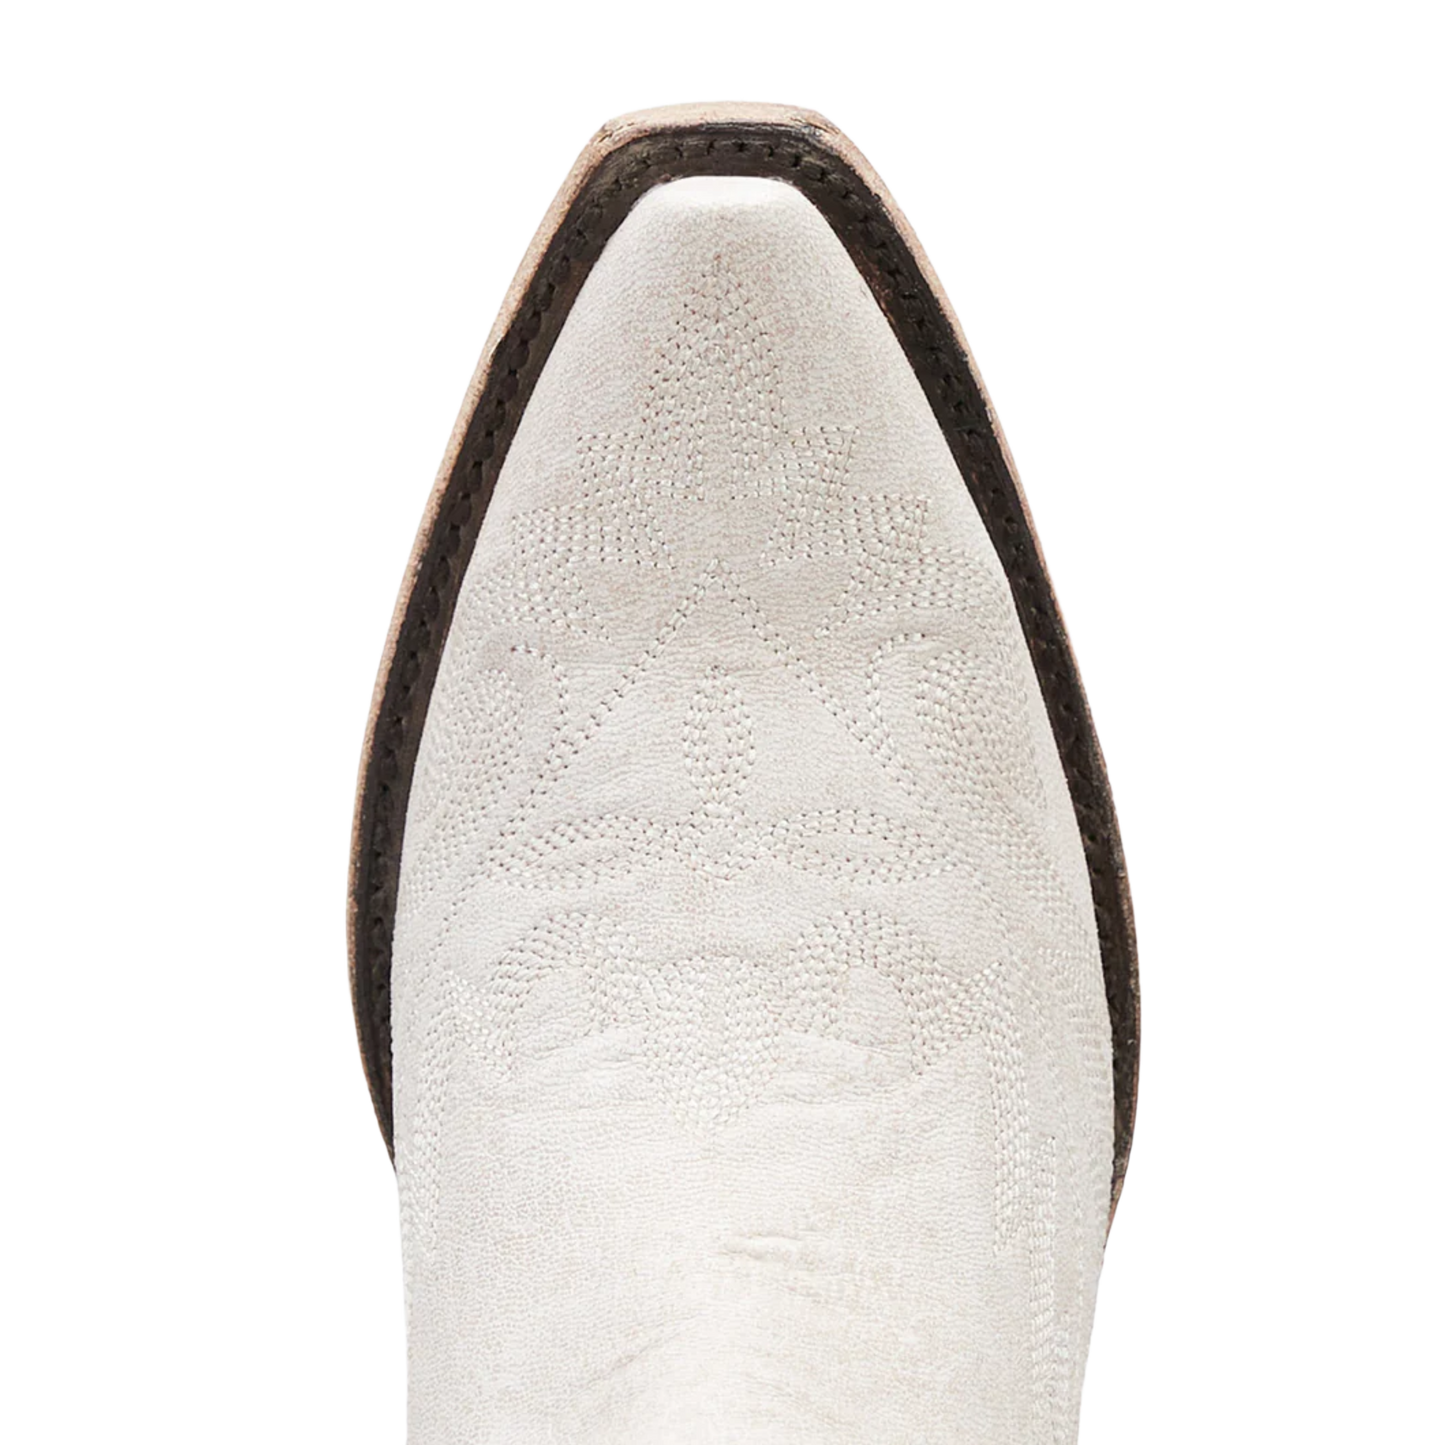 Lane Boots® Ladies Lexington Ceramic Crackle Boots LB0488D